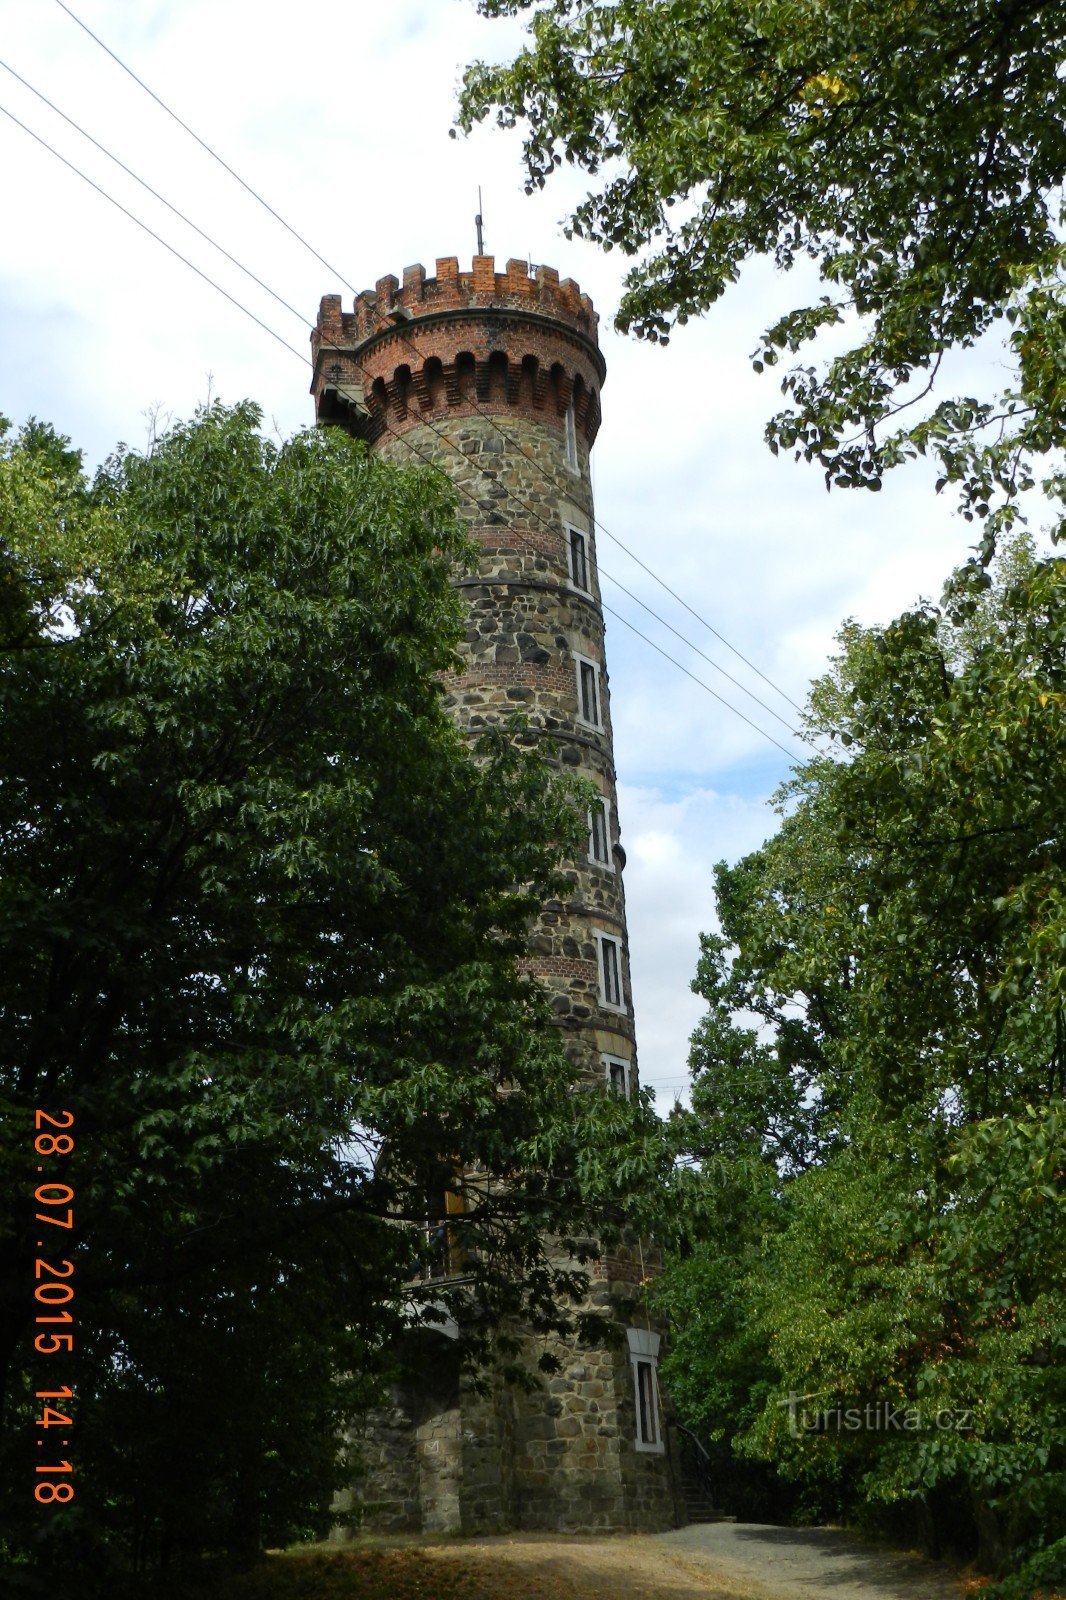 Cvilín - uitkijktoren in details van buiten, binnen en uitzicht